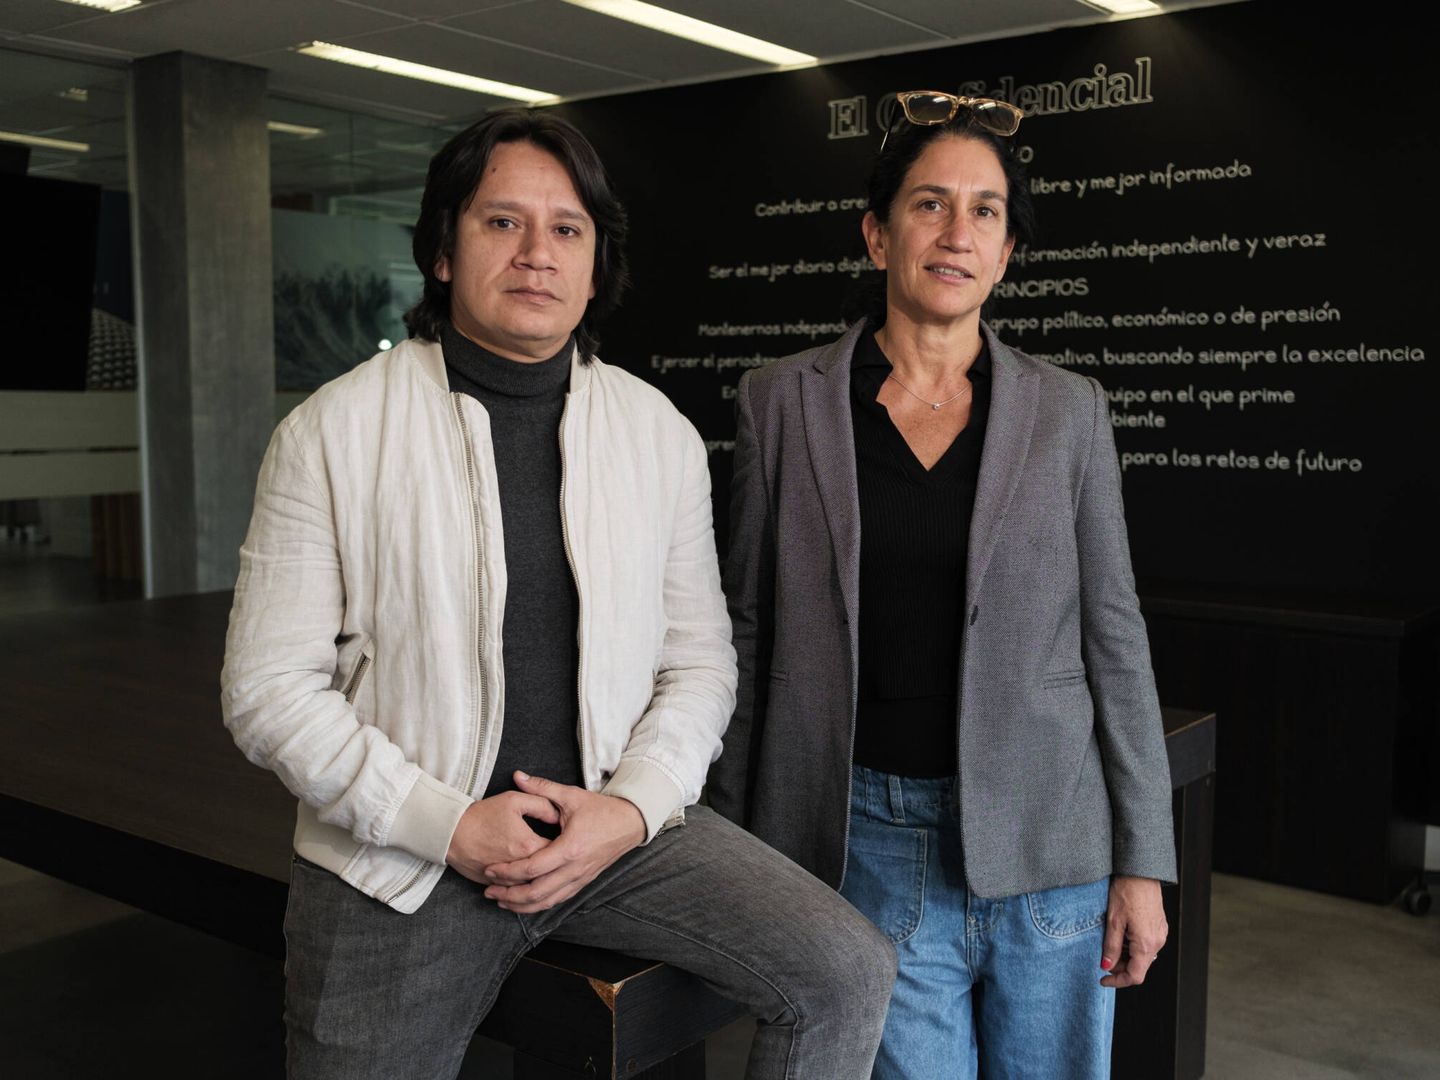 Christopher Acosta y Adriana León, miembros de IPYS y director y subdirectora de COLPIN, durante su visita a la redacción de El Confidencial.